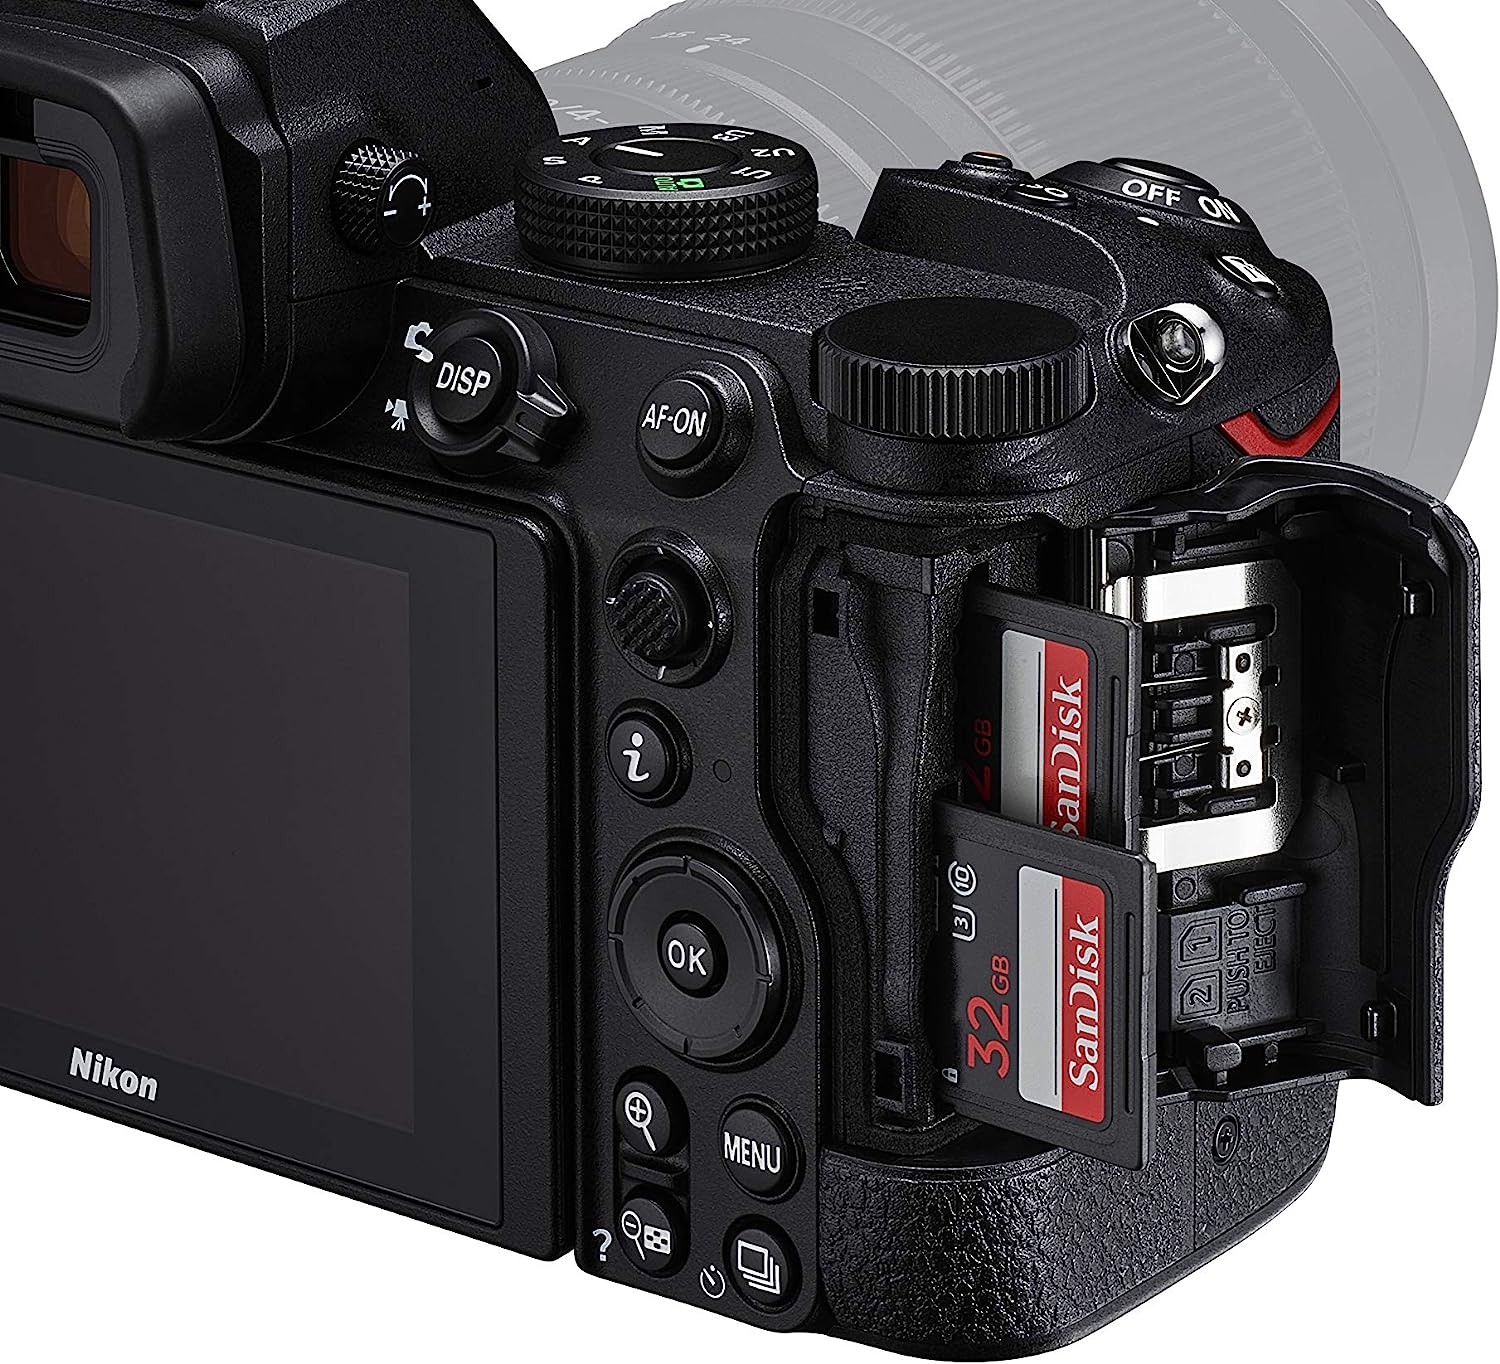 Nikon DSLR Camera Comparison: Exploring the Evolution of Nikon's Flagship Models